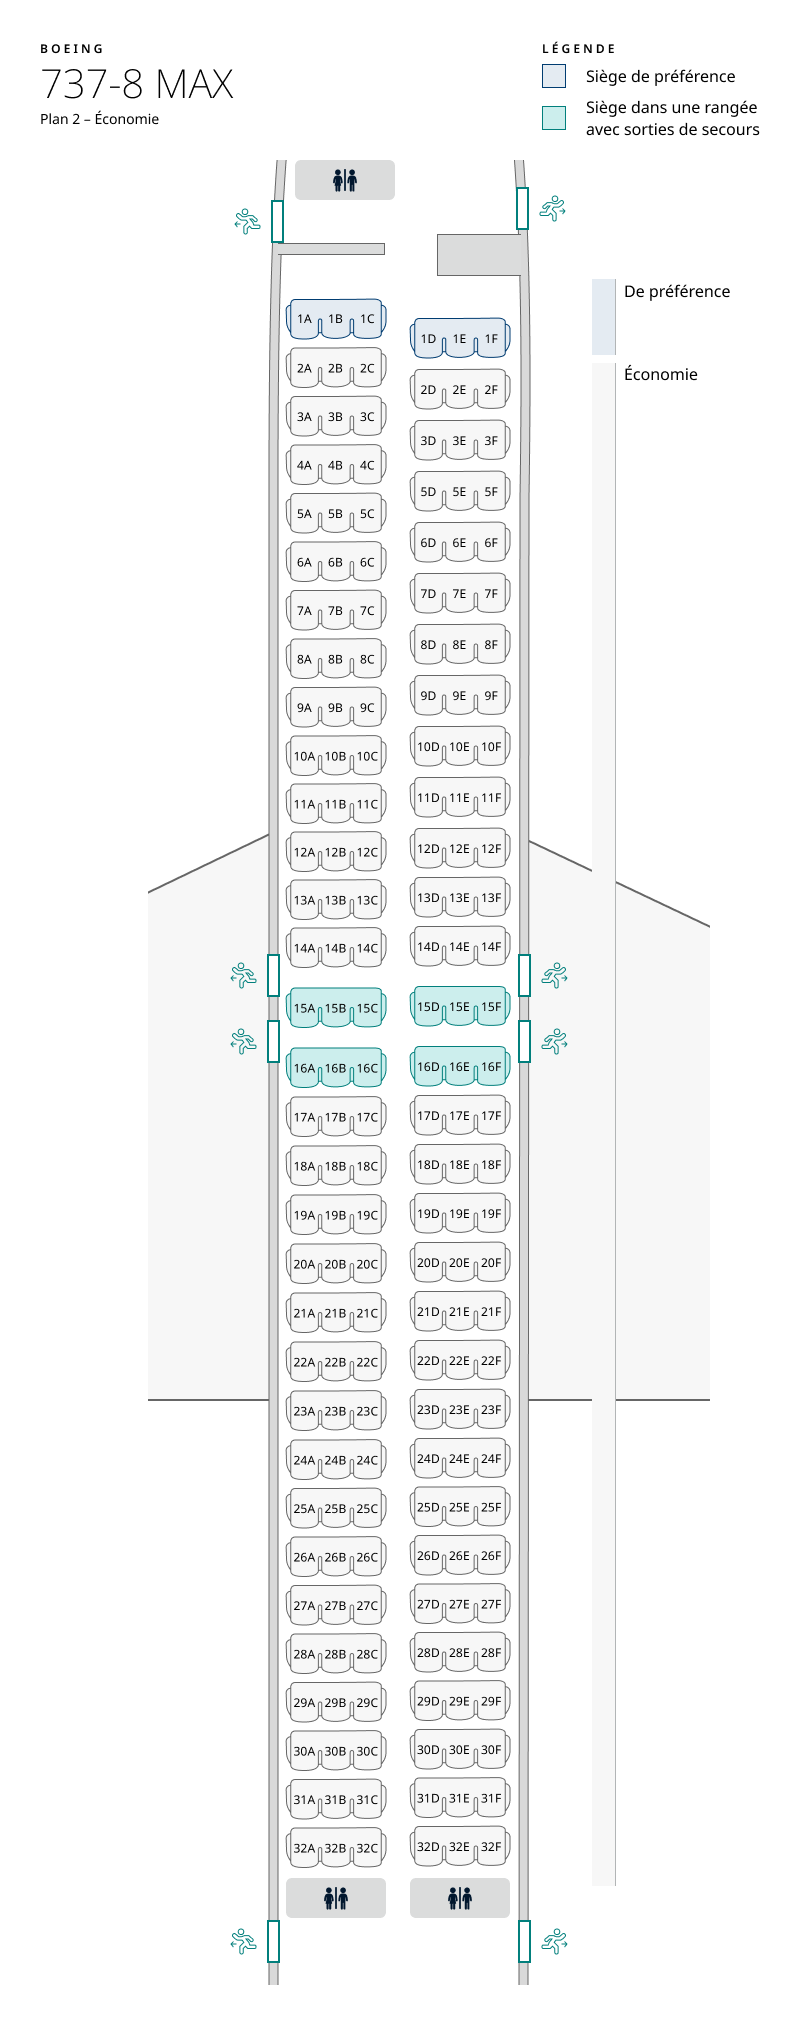 Plan de cabine de l’appareil 737-8 MAX, configuration 2 – Classe Économique seulement. Les renseignements sur les sièges sont disponibles dans le tableau ci-dessous :